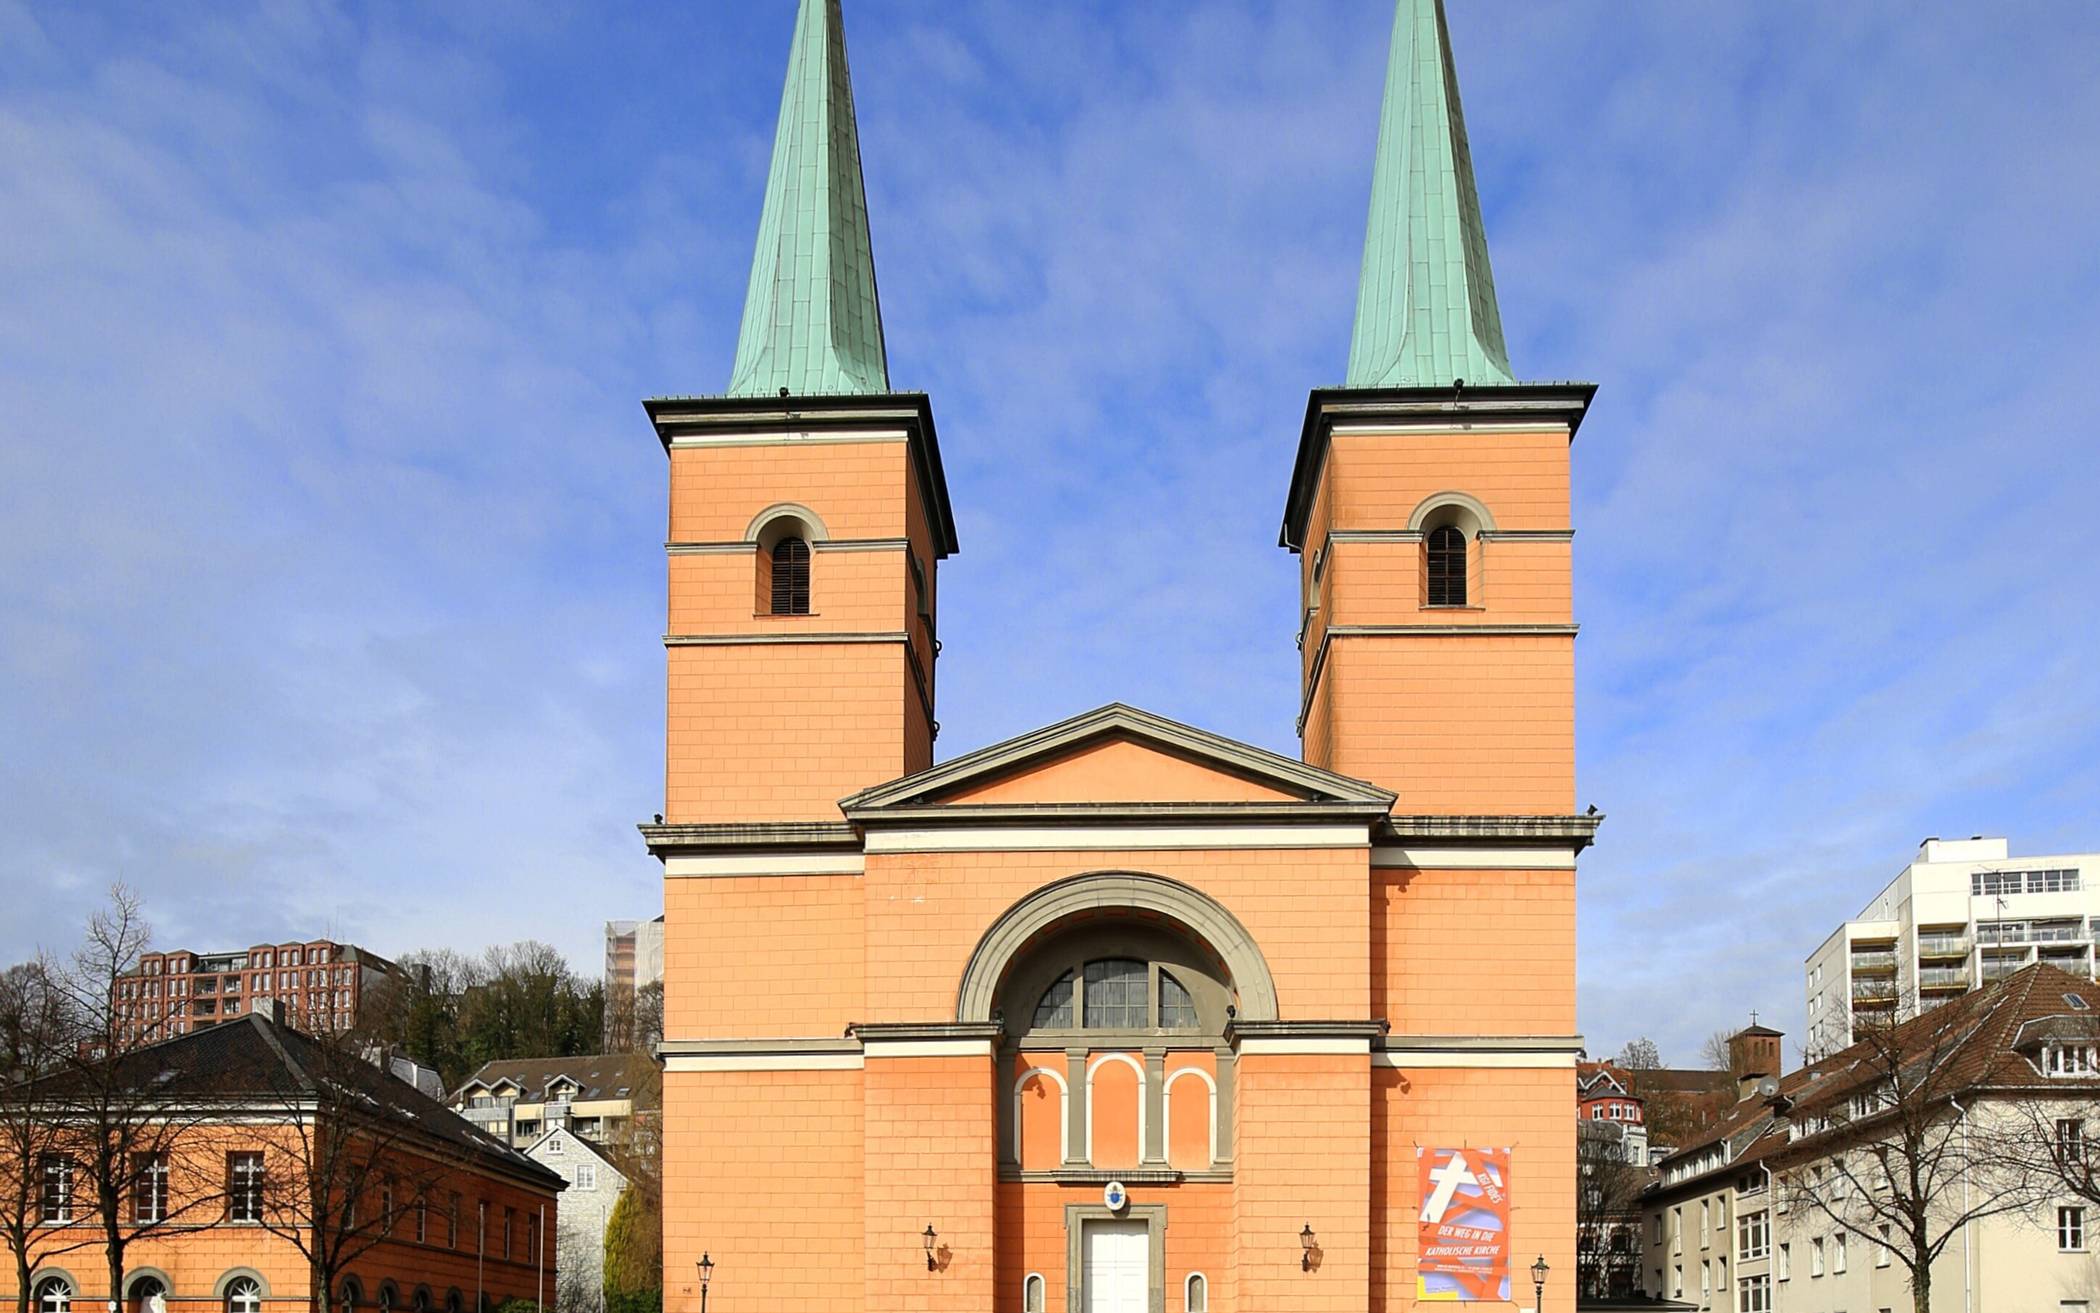  Die Basilika minor St. Laurentius in Elberfeld. 